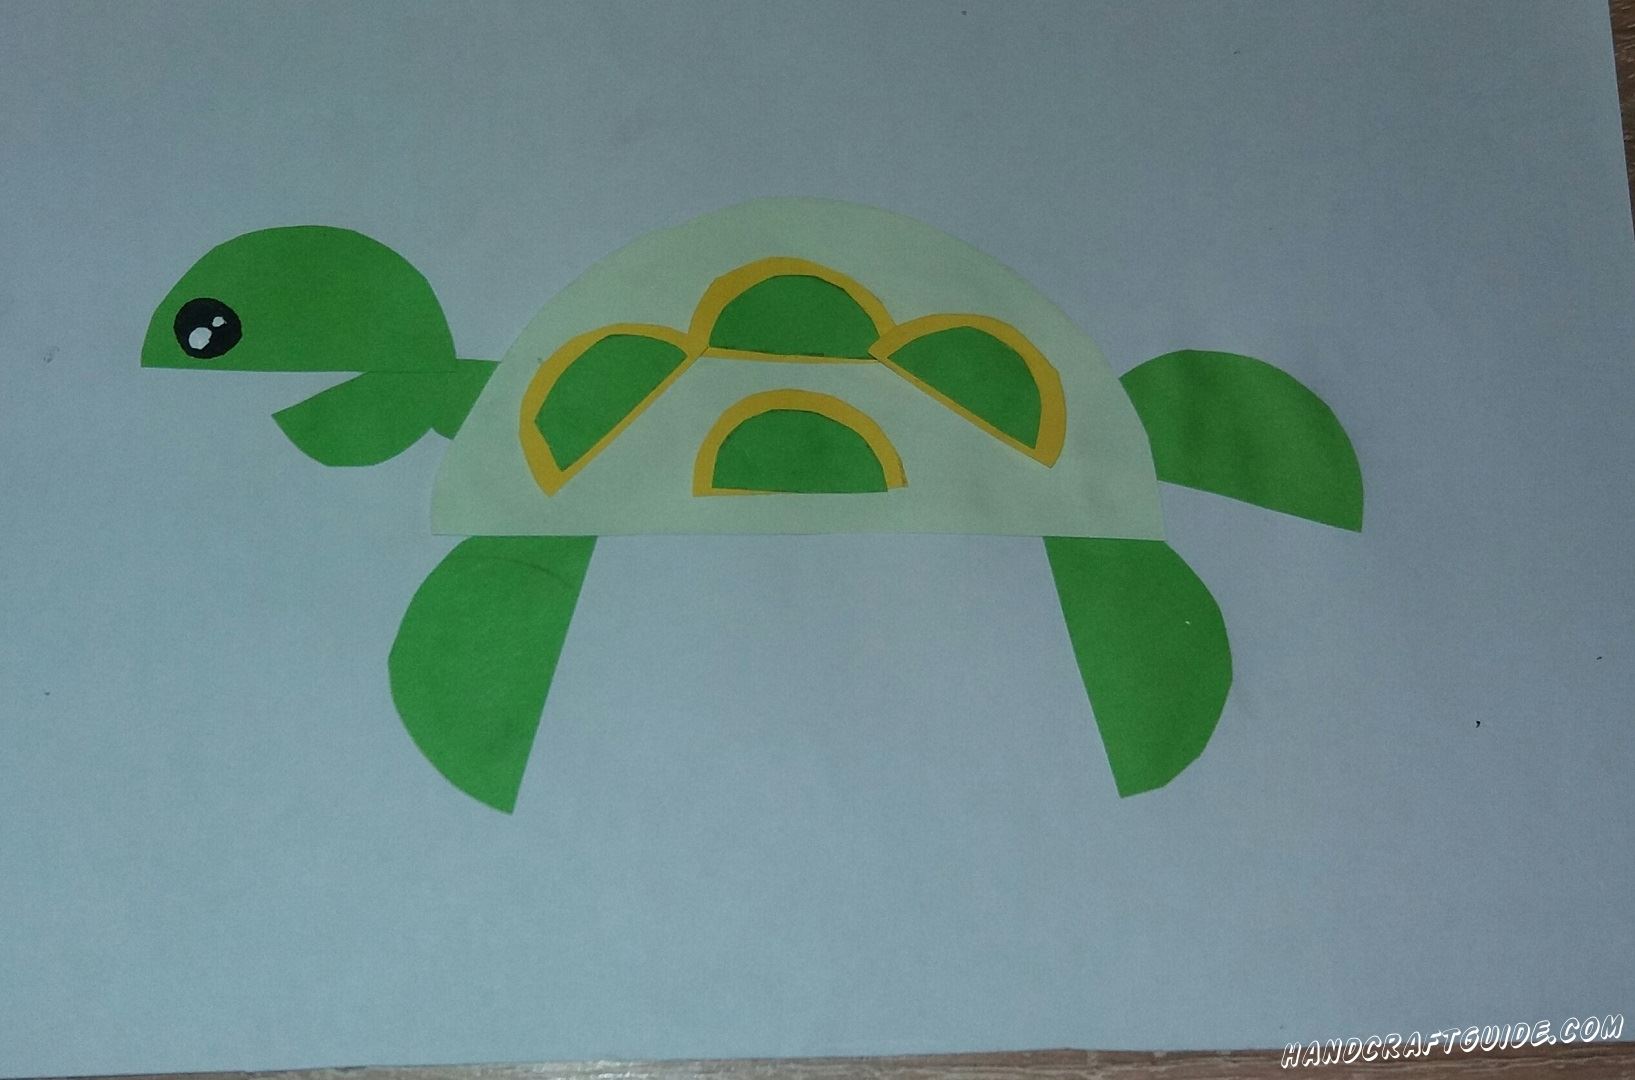 Поспешите к нам, ведь сейчас мы будем делать замечательную черепаху из цветной бумаги